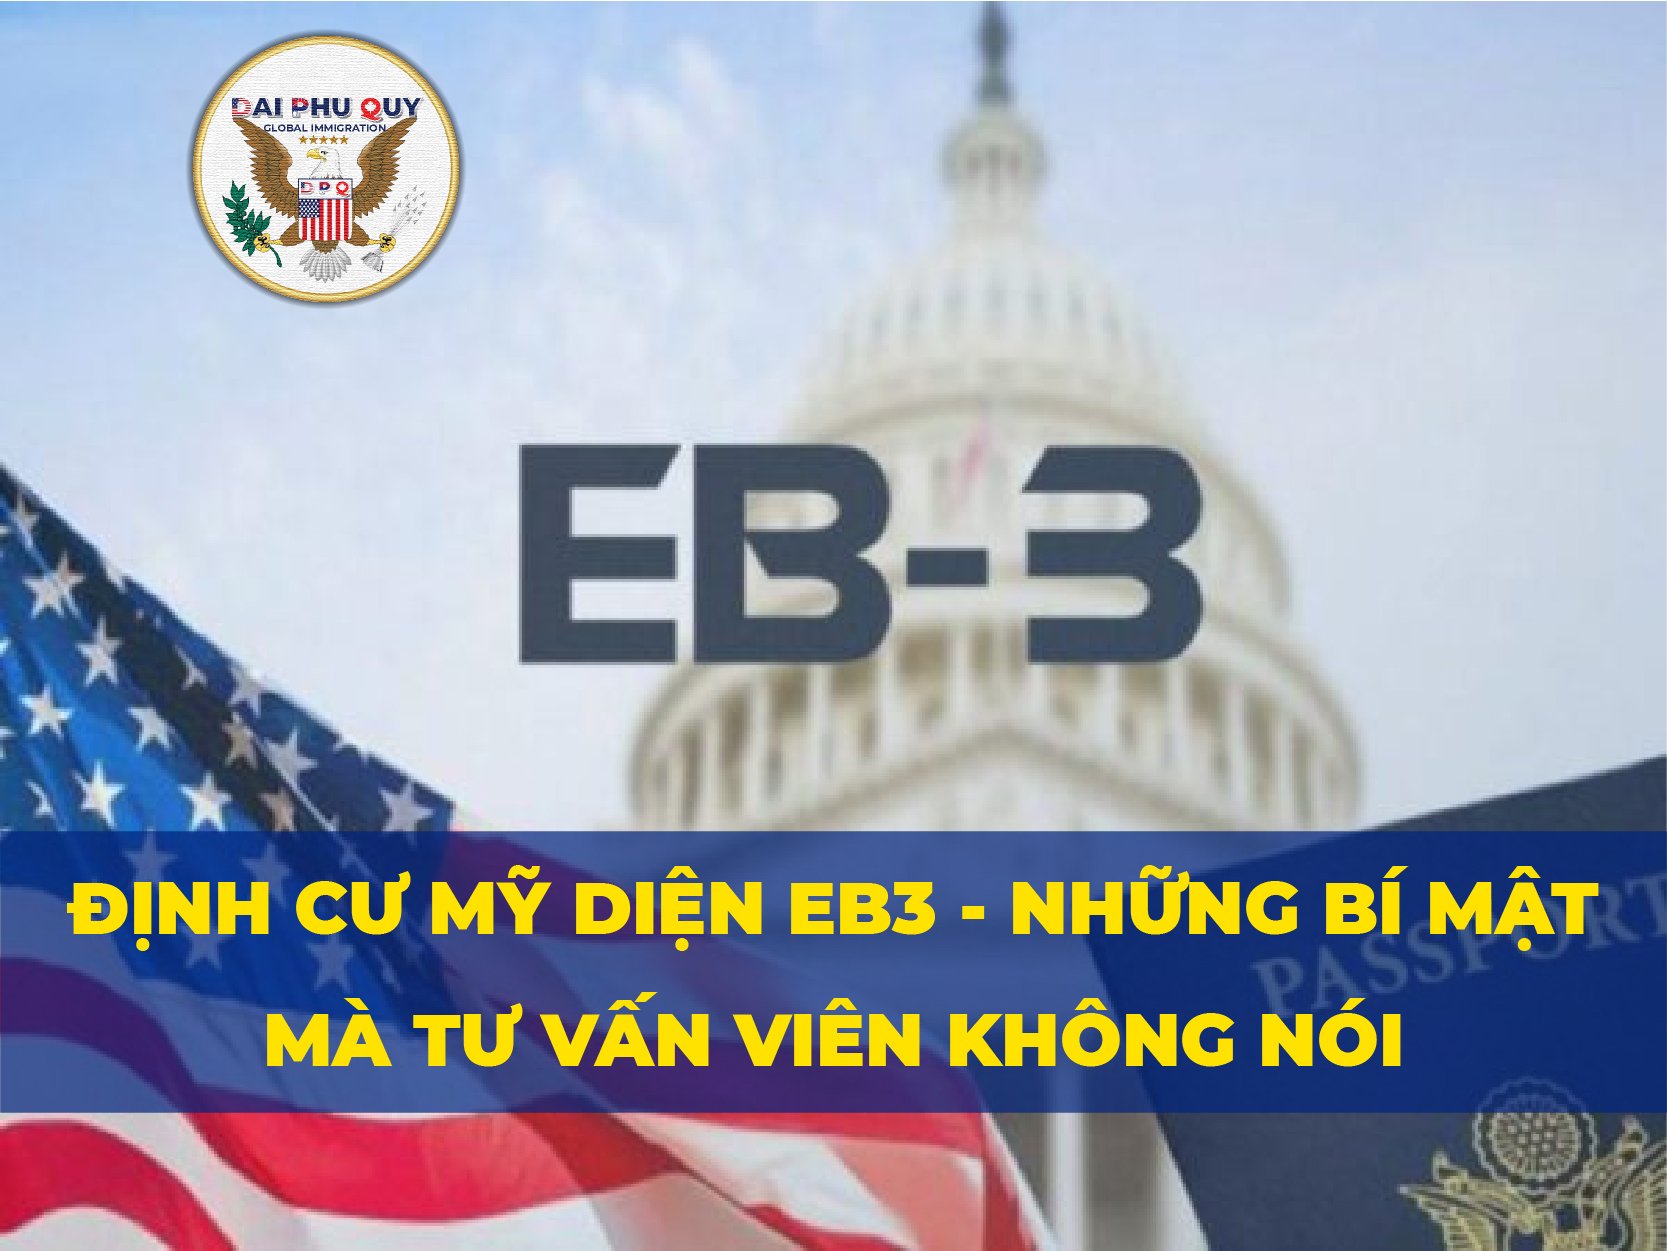 Định cư Mỹ diện EB3 – Những bí mật mà Tư vấn viên không nói?